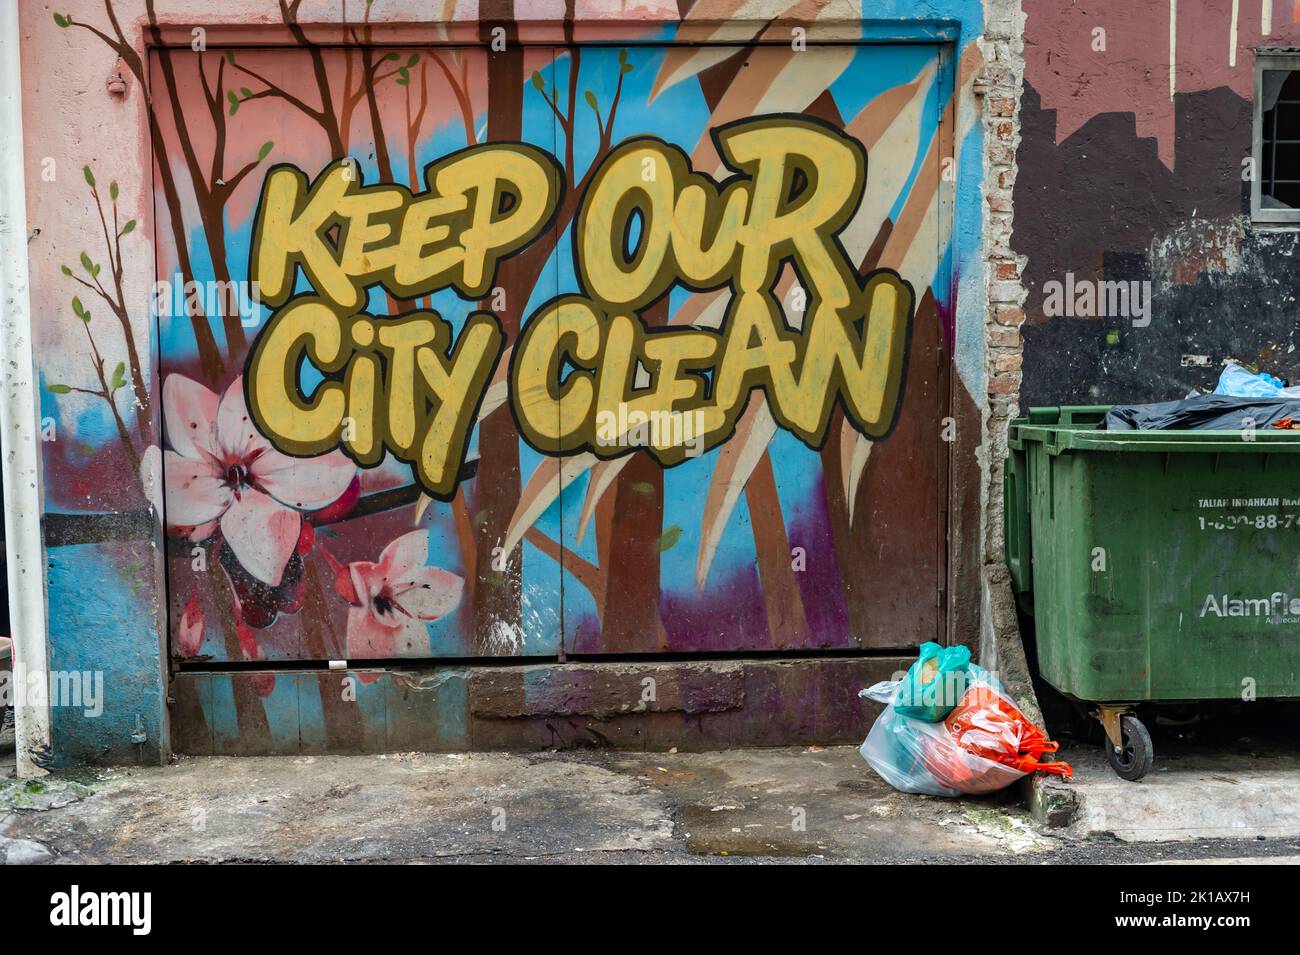 Halten Sie unsere City Clean Street Art in Kuala Lumpur, Malaysia Stockfoto